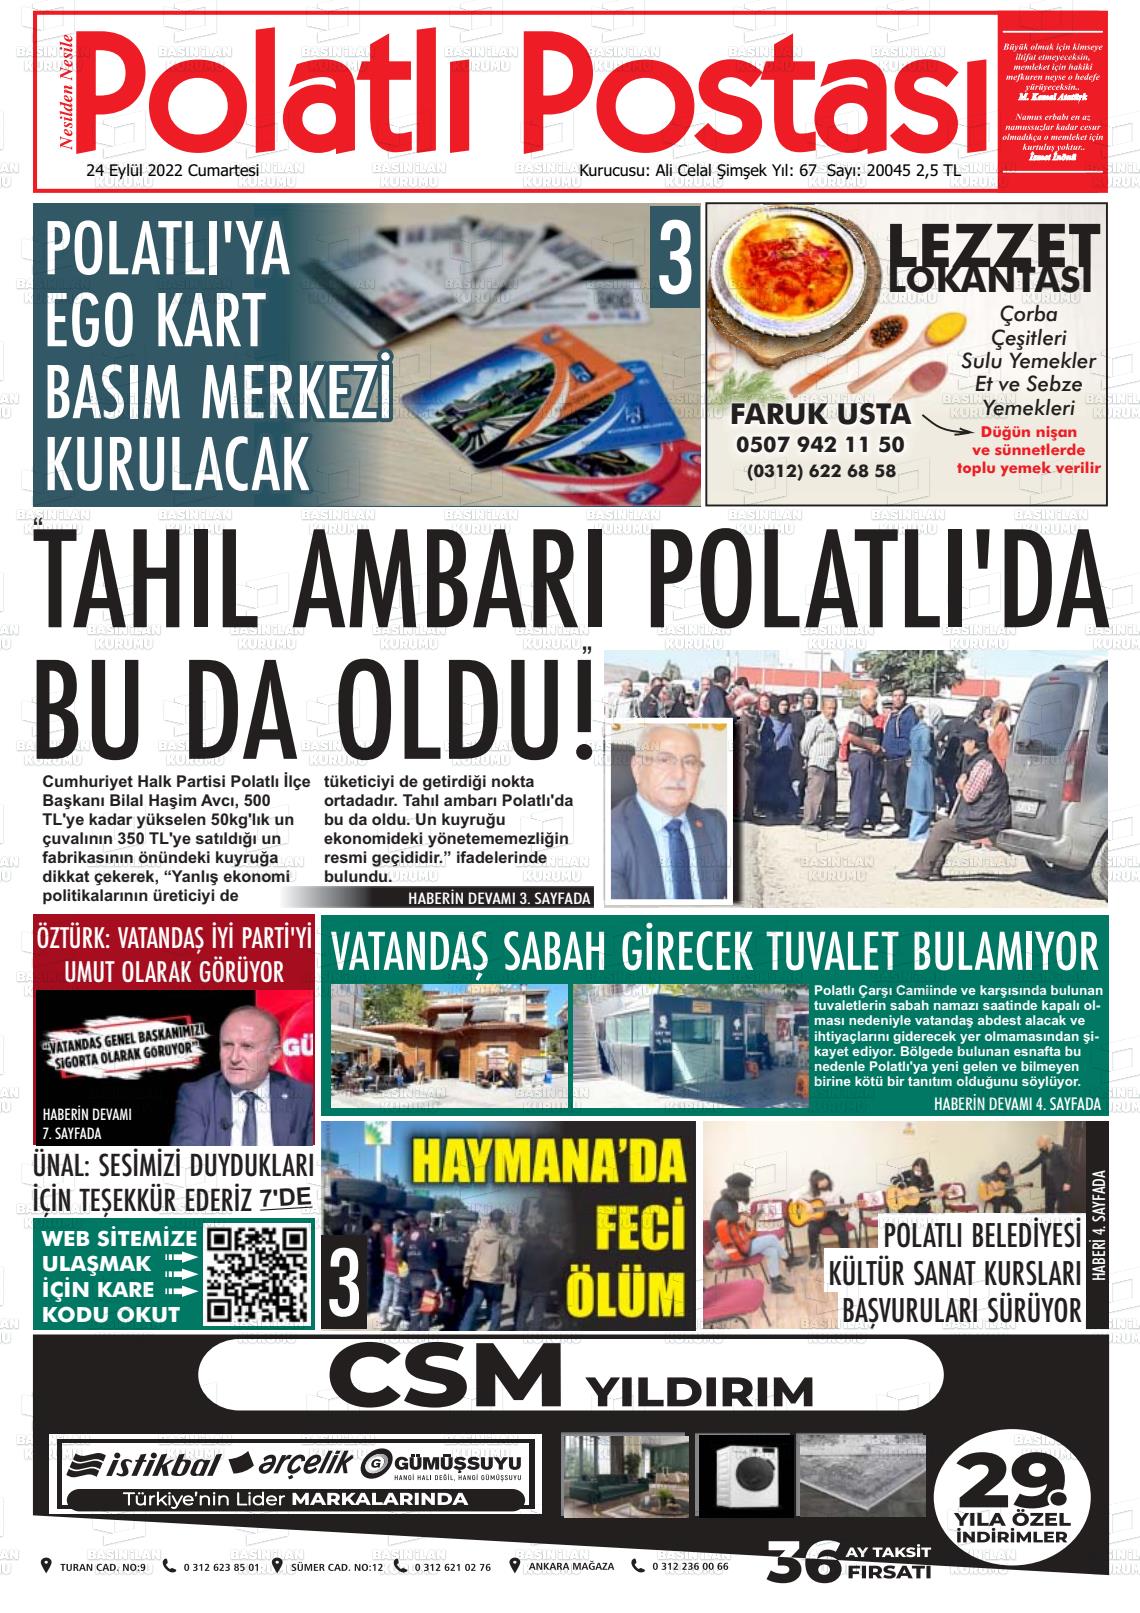 24 Eylül 2022 Polatlı Postası Gazete Manşeti